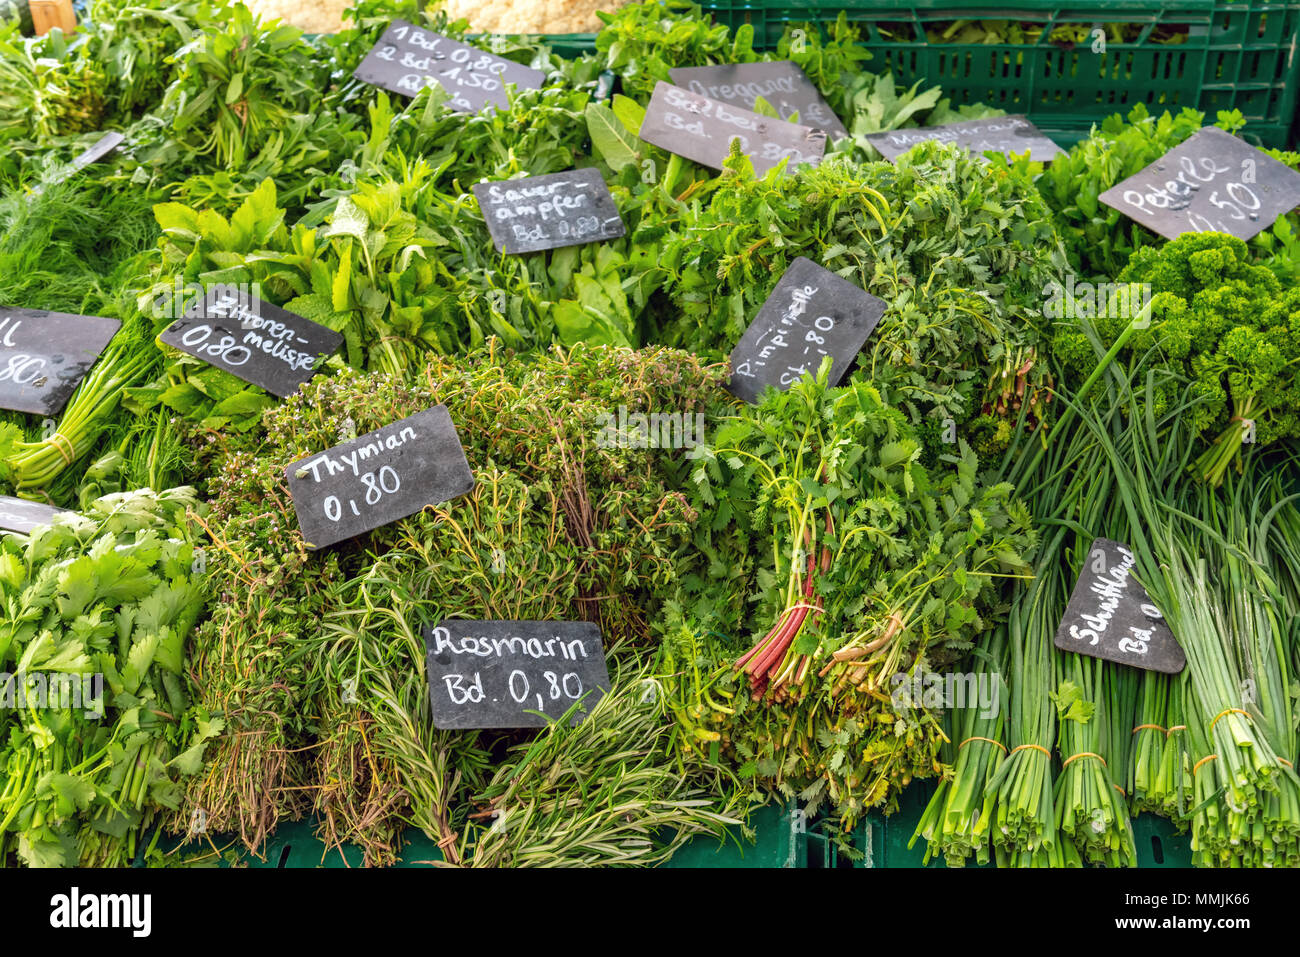 Diversi tipi di erbe aromatiche fresche per la vendita su un mercato Foto Stock